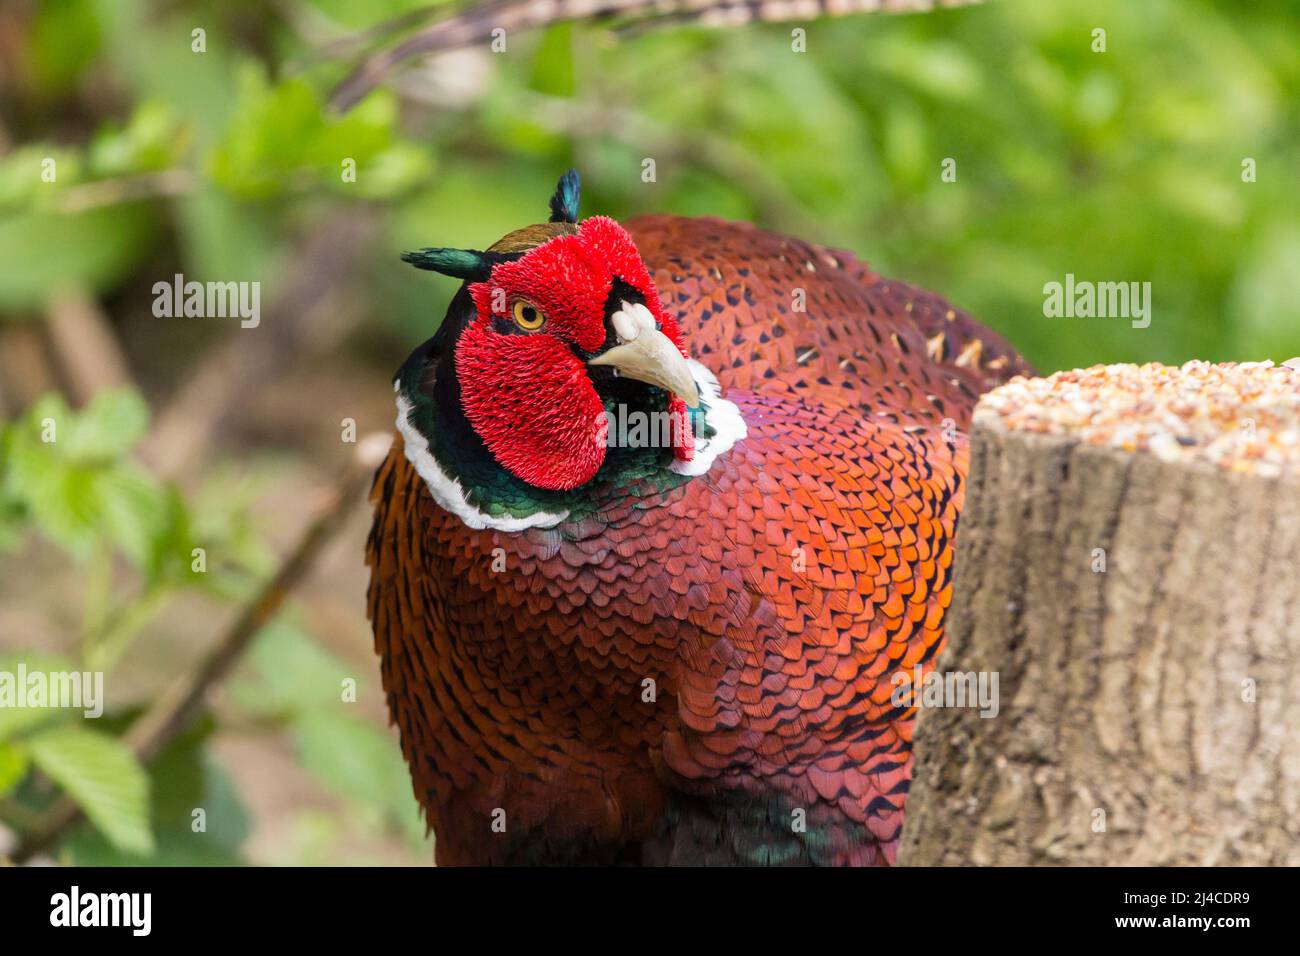 Faisan (Phasianus colchicus) oiseau de gibier mâle rouge arroche bleu vert lustre sur la tête orange brun corps plumage et longue queue orange et collier blanc Banque D'Images